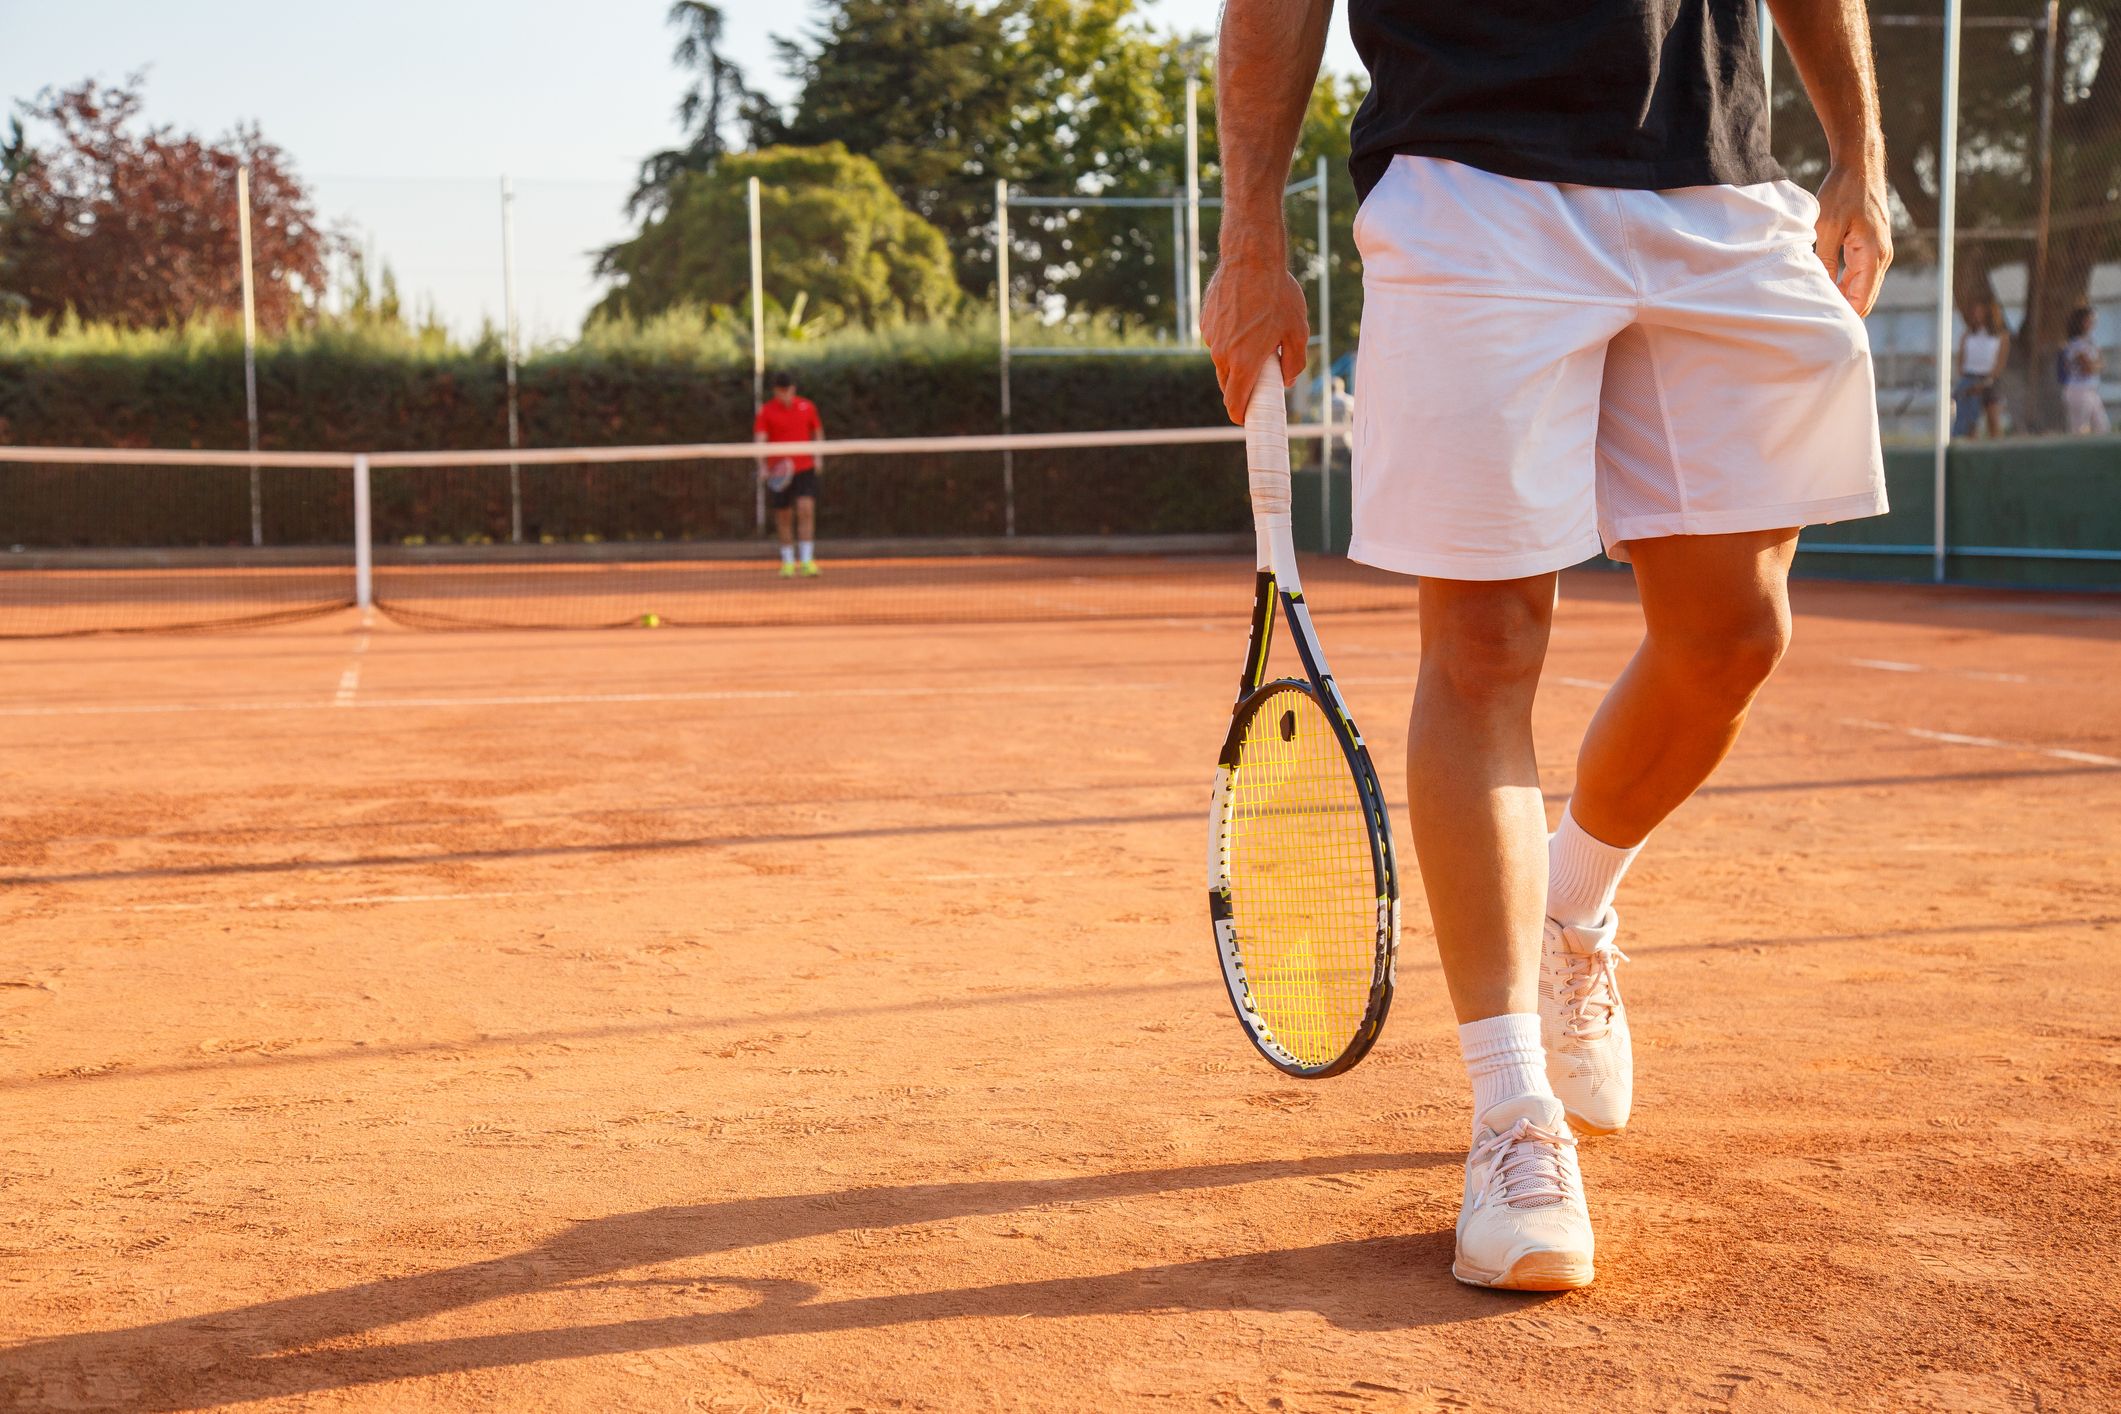 Almacén el Tenista: Artículos para tenis de campo en Colombia.